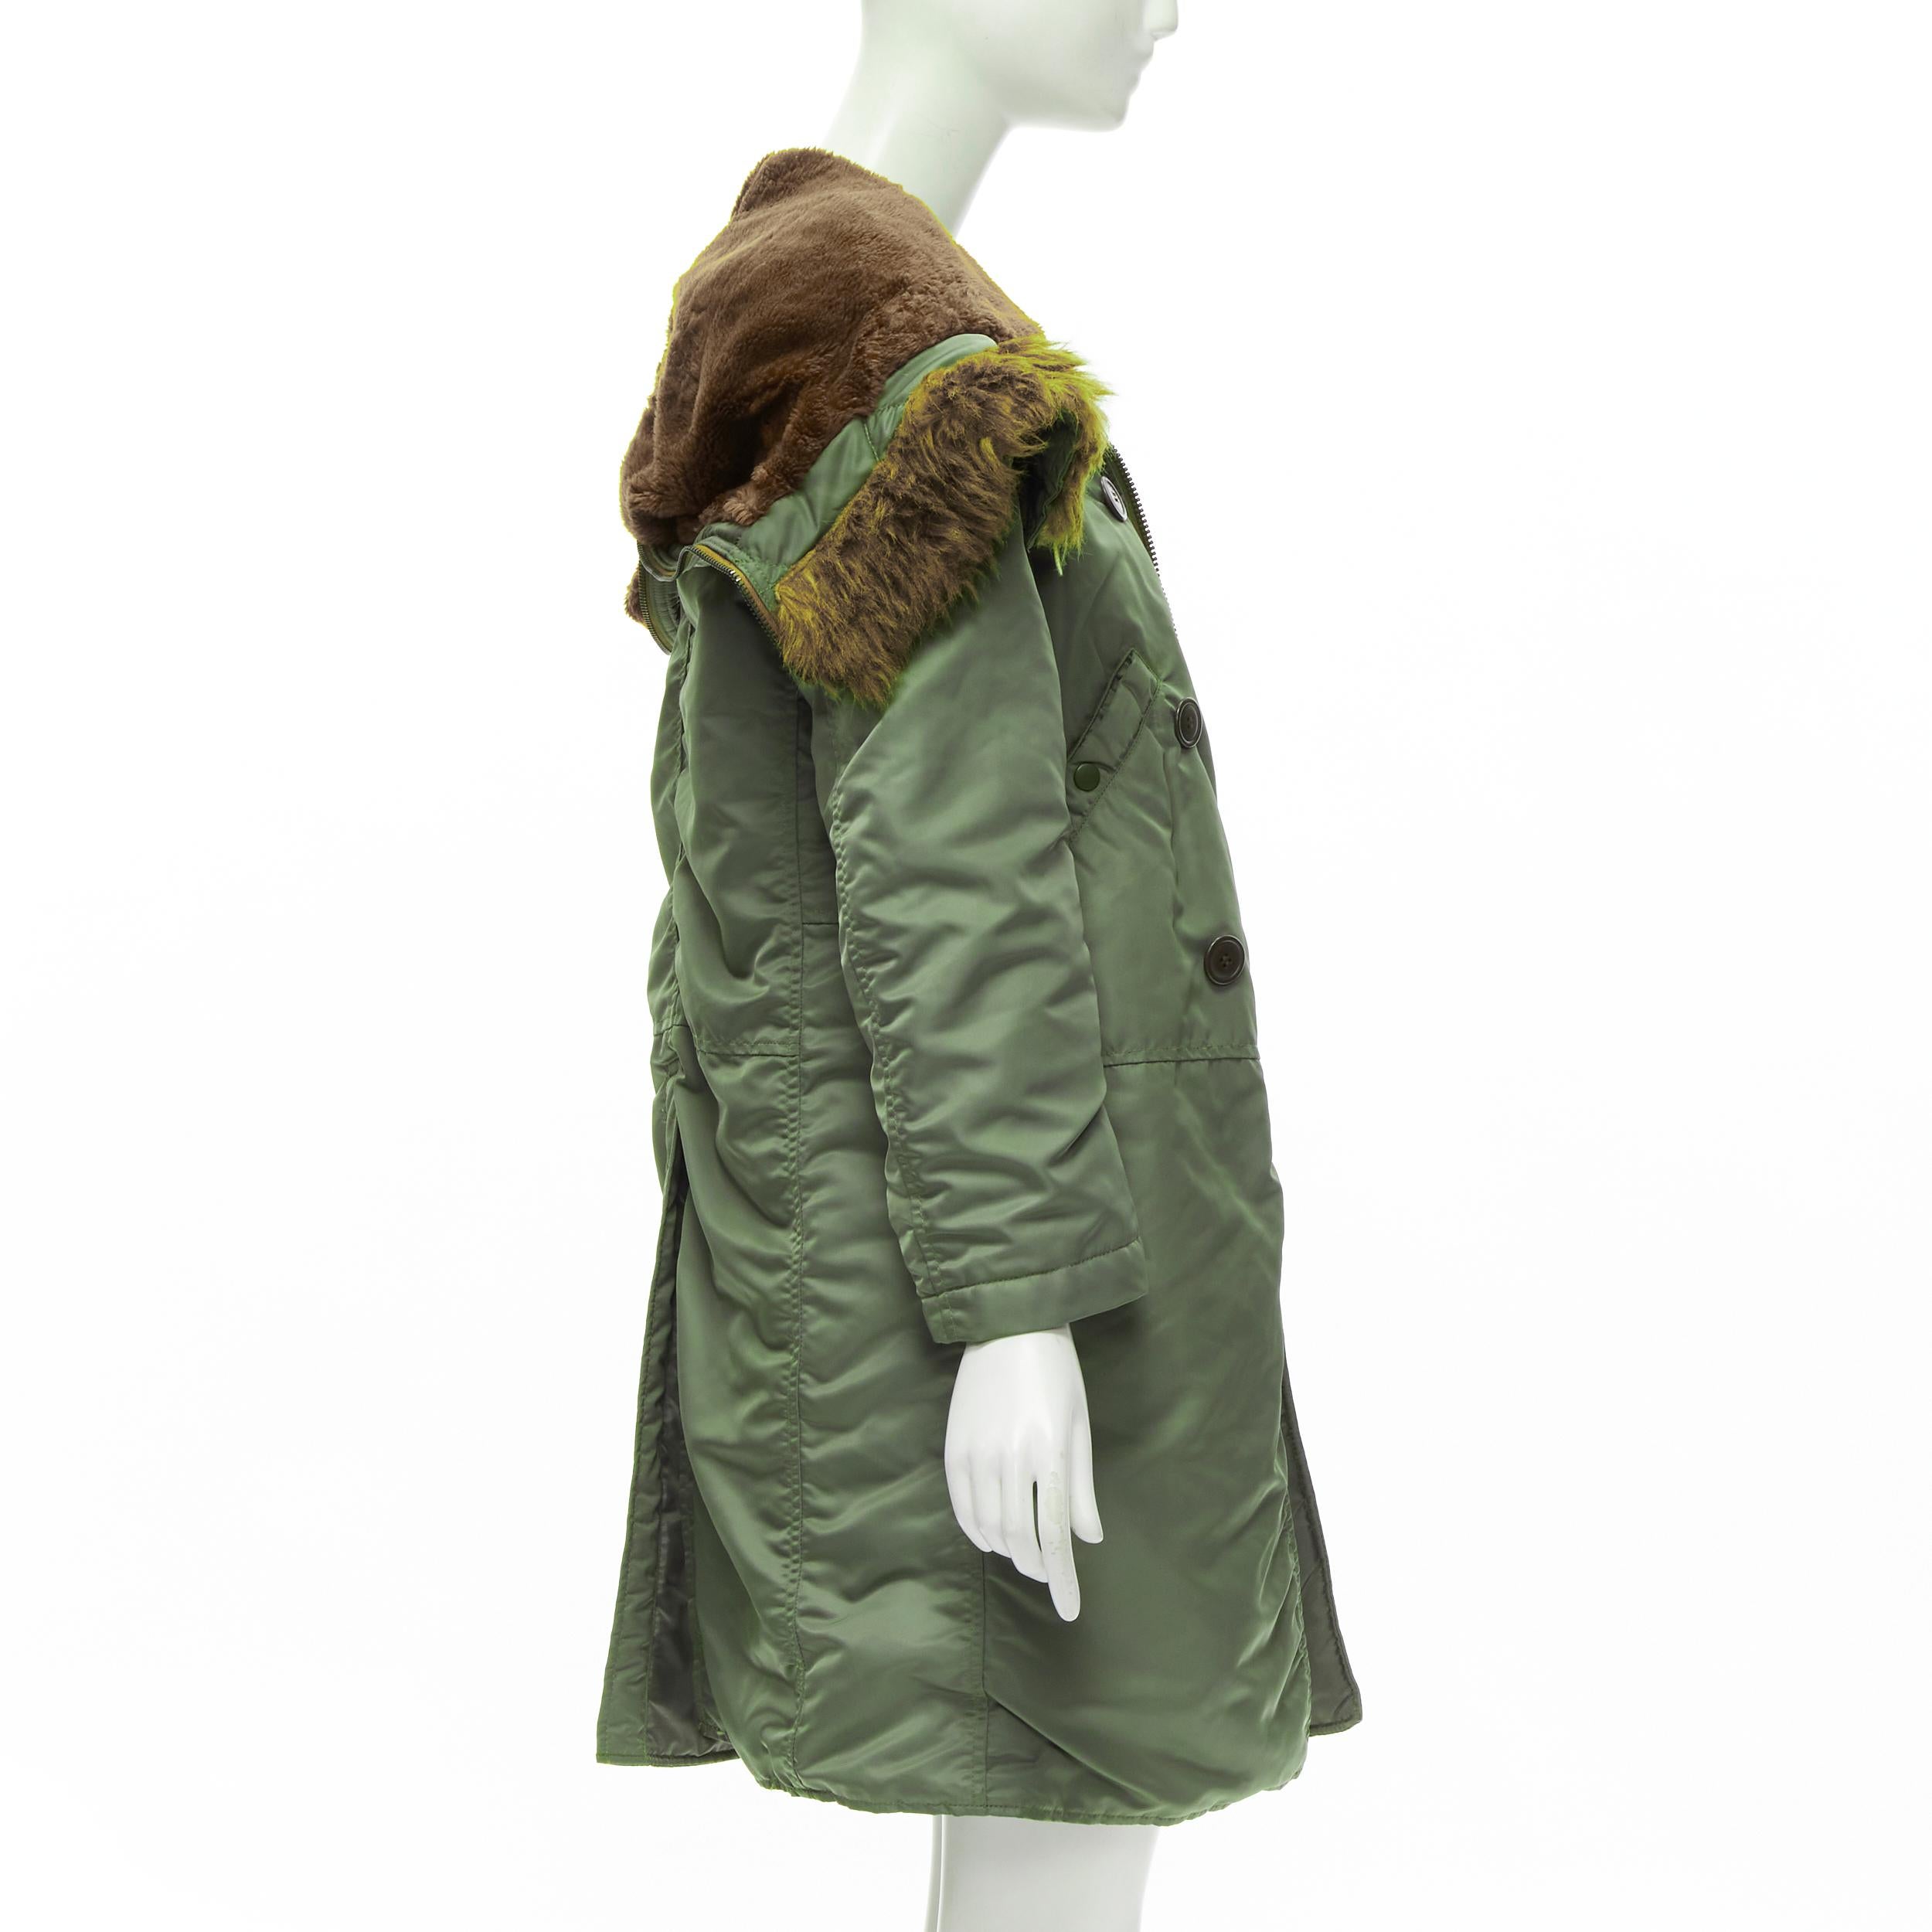 JUNYA WATANABE Manteau safari à capuche en fausse fourrure marron et rembourré vert, Taille XS, 2006 Pour femmes en vente